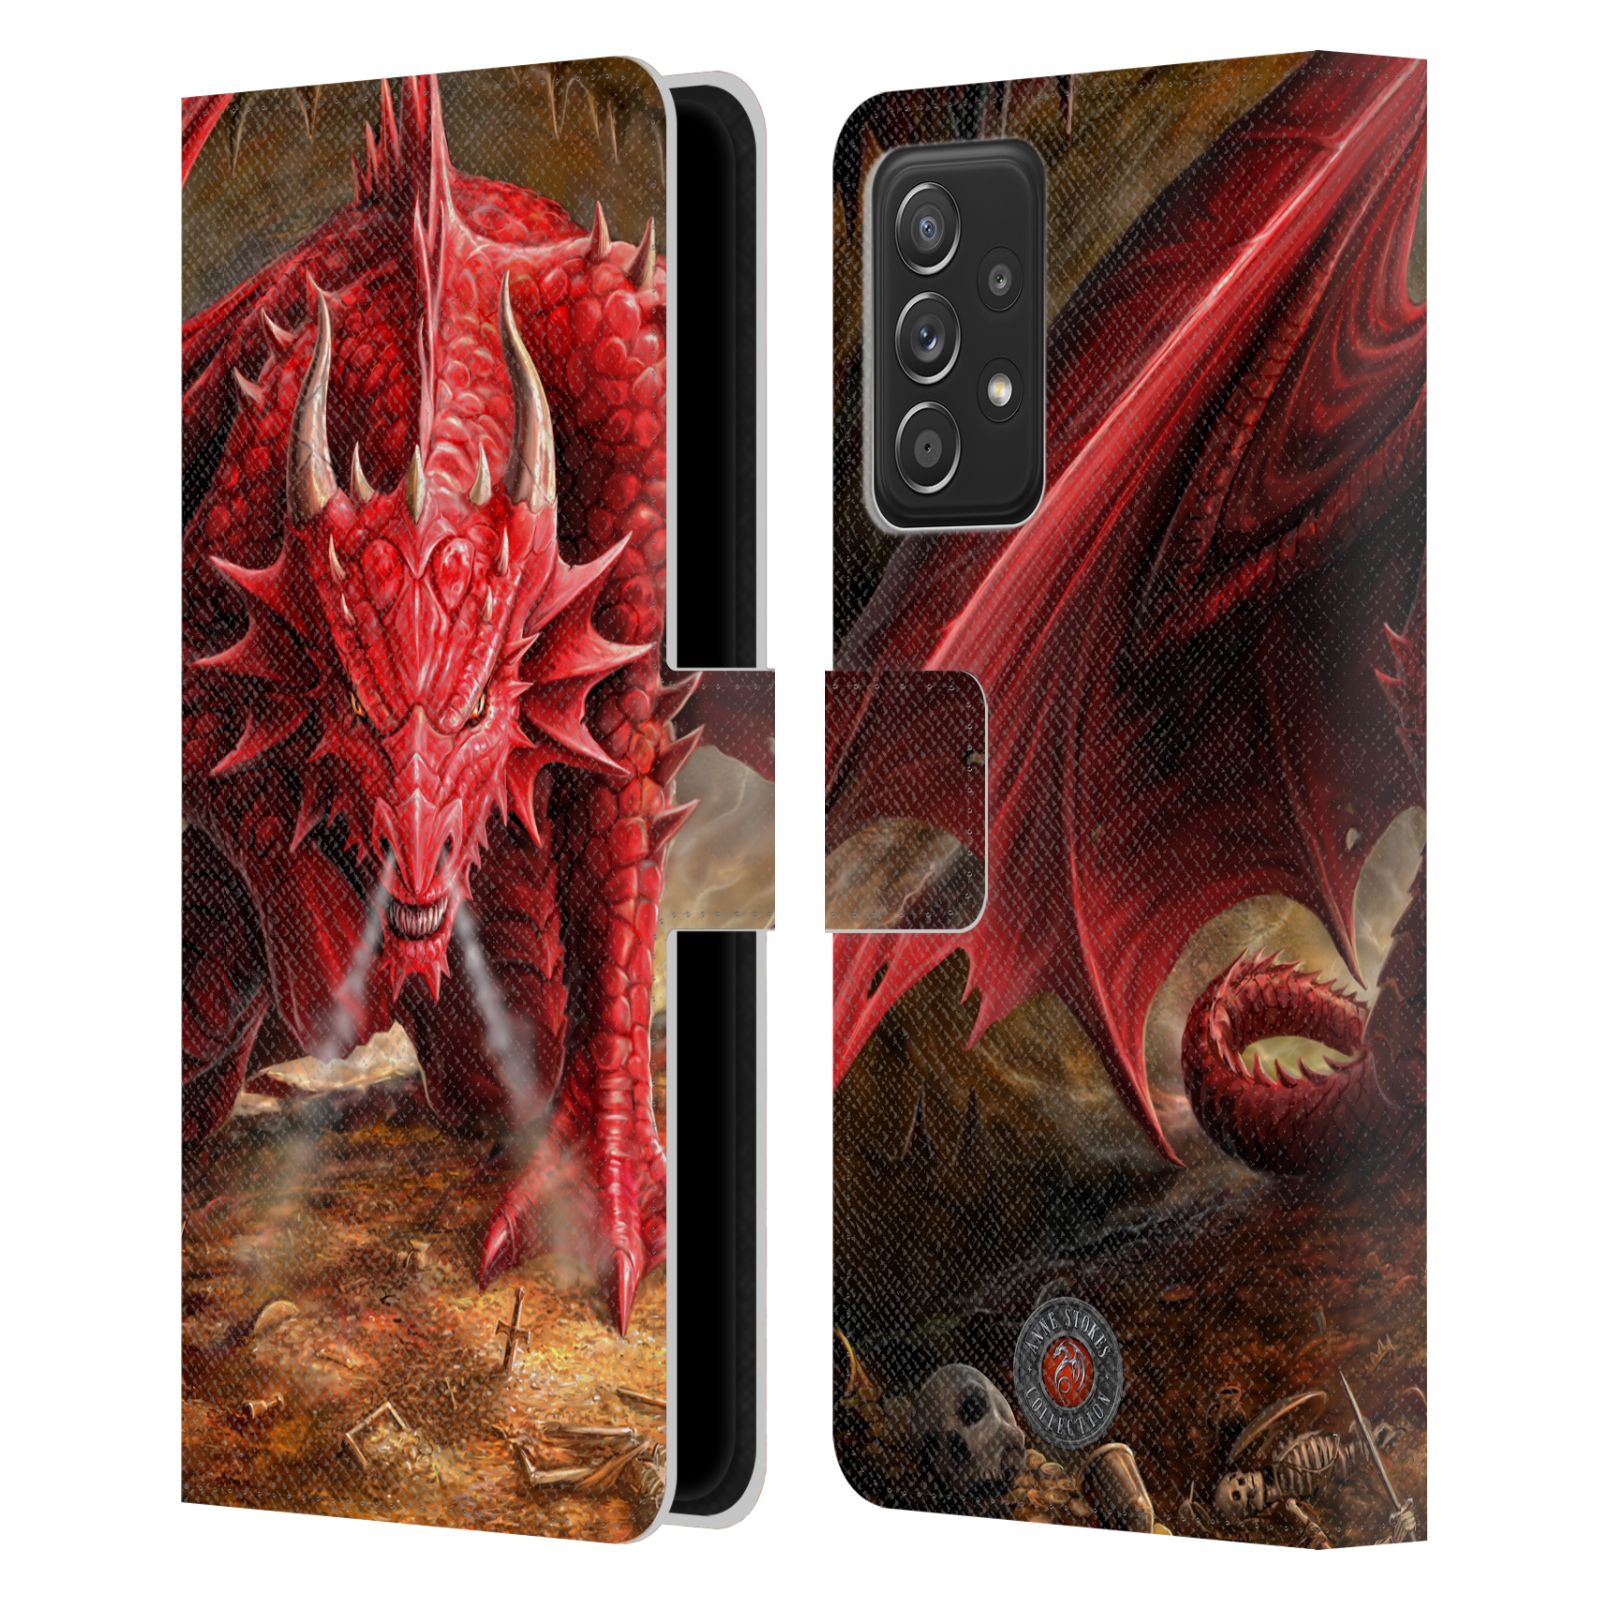 Pouzdro HEAD CASE na mobil Samsung Galaxy A52 / A52 5G / A52s 5G  fantasy - červený drak